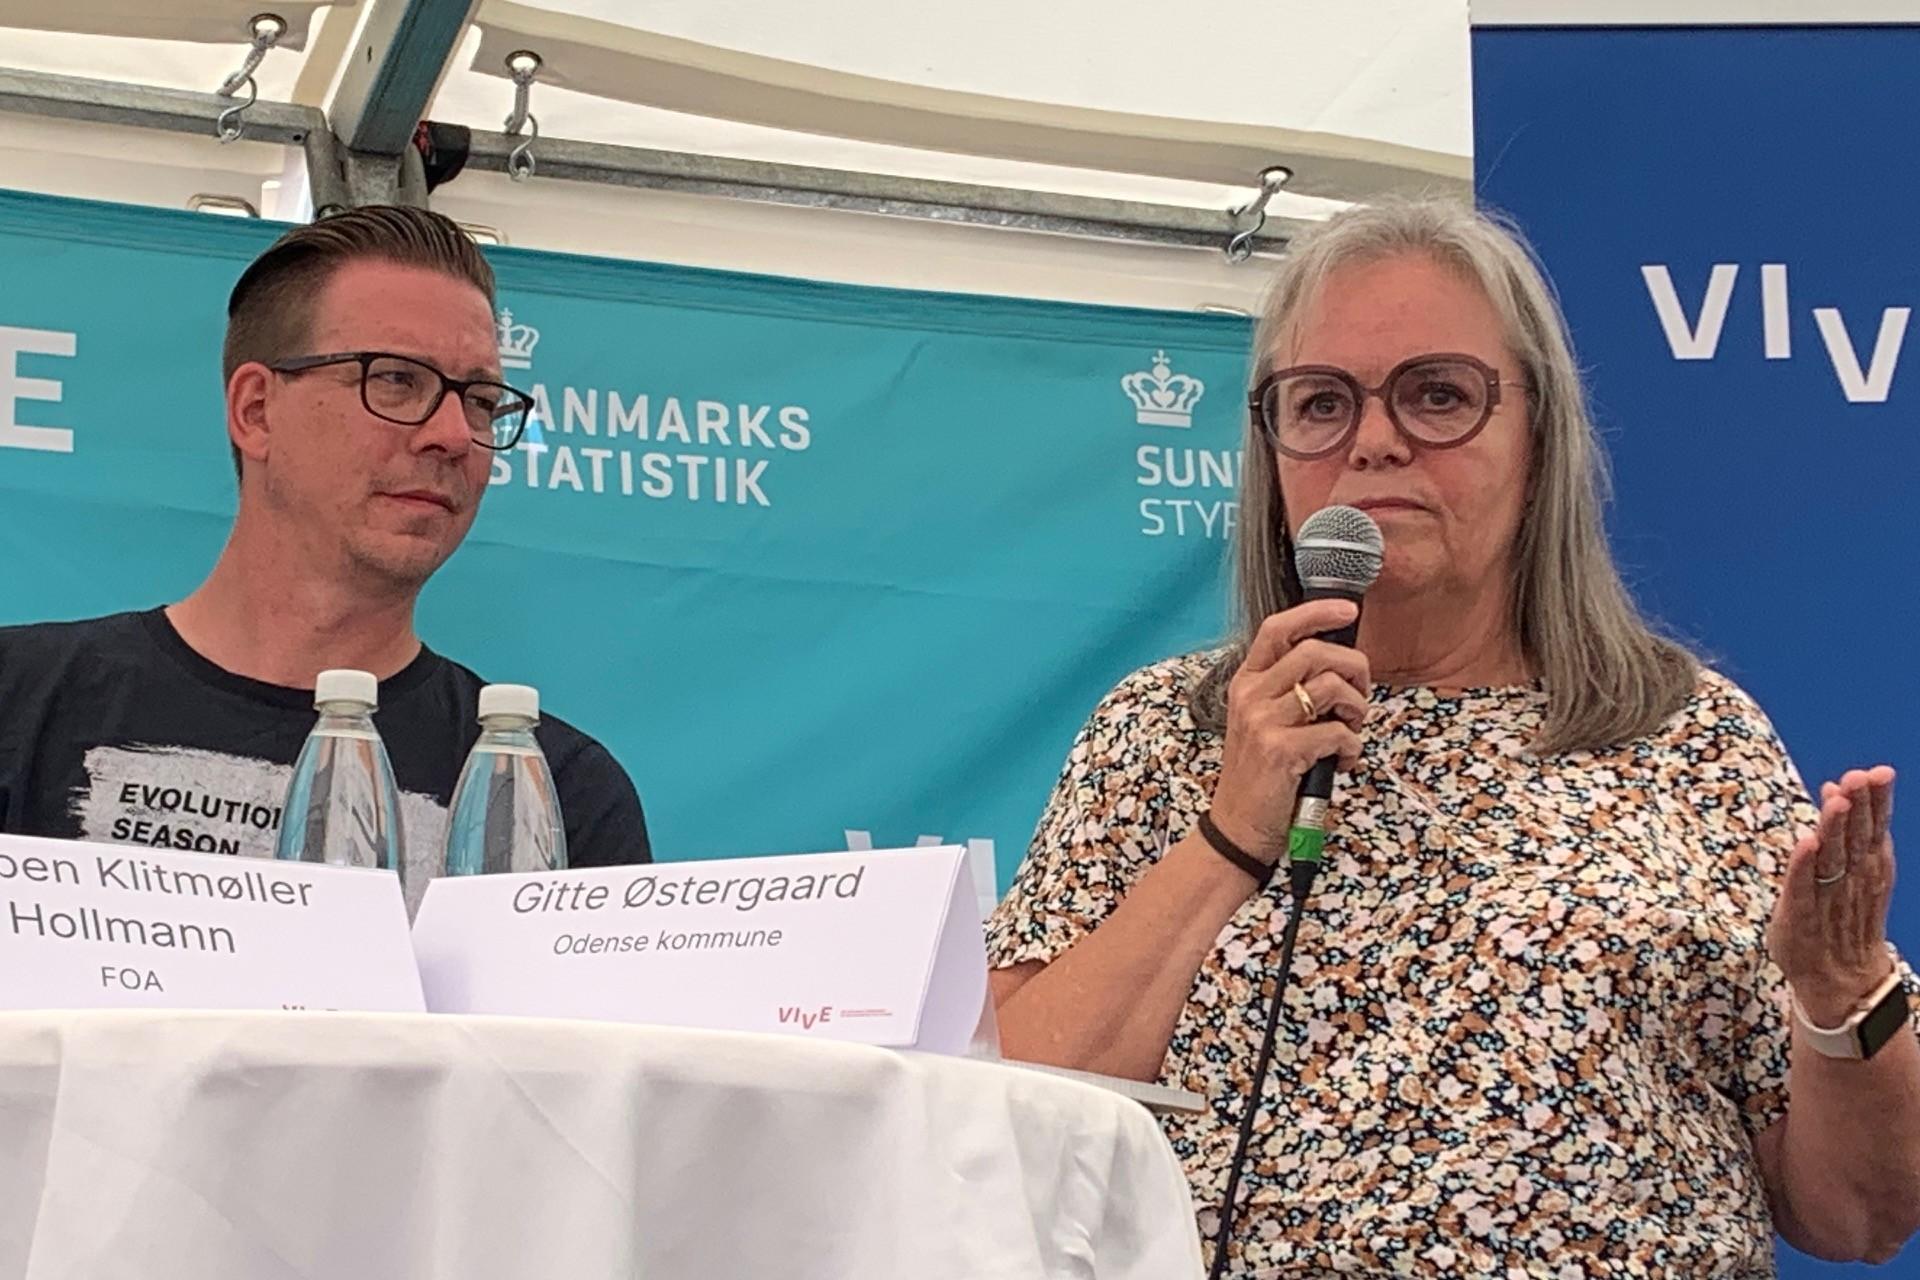 Ældredirektør Gitte Østergaard oplever, at mange arbejder på deltid for at få tid til at arbejde som vikarer ved siden af. Det bekræftede bl.a. Torben Klitmøller Hollmann fra FOA.